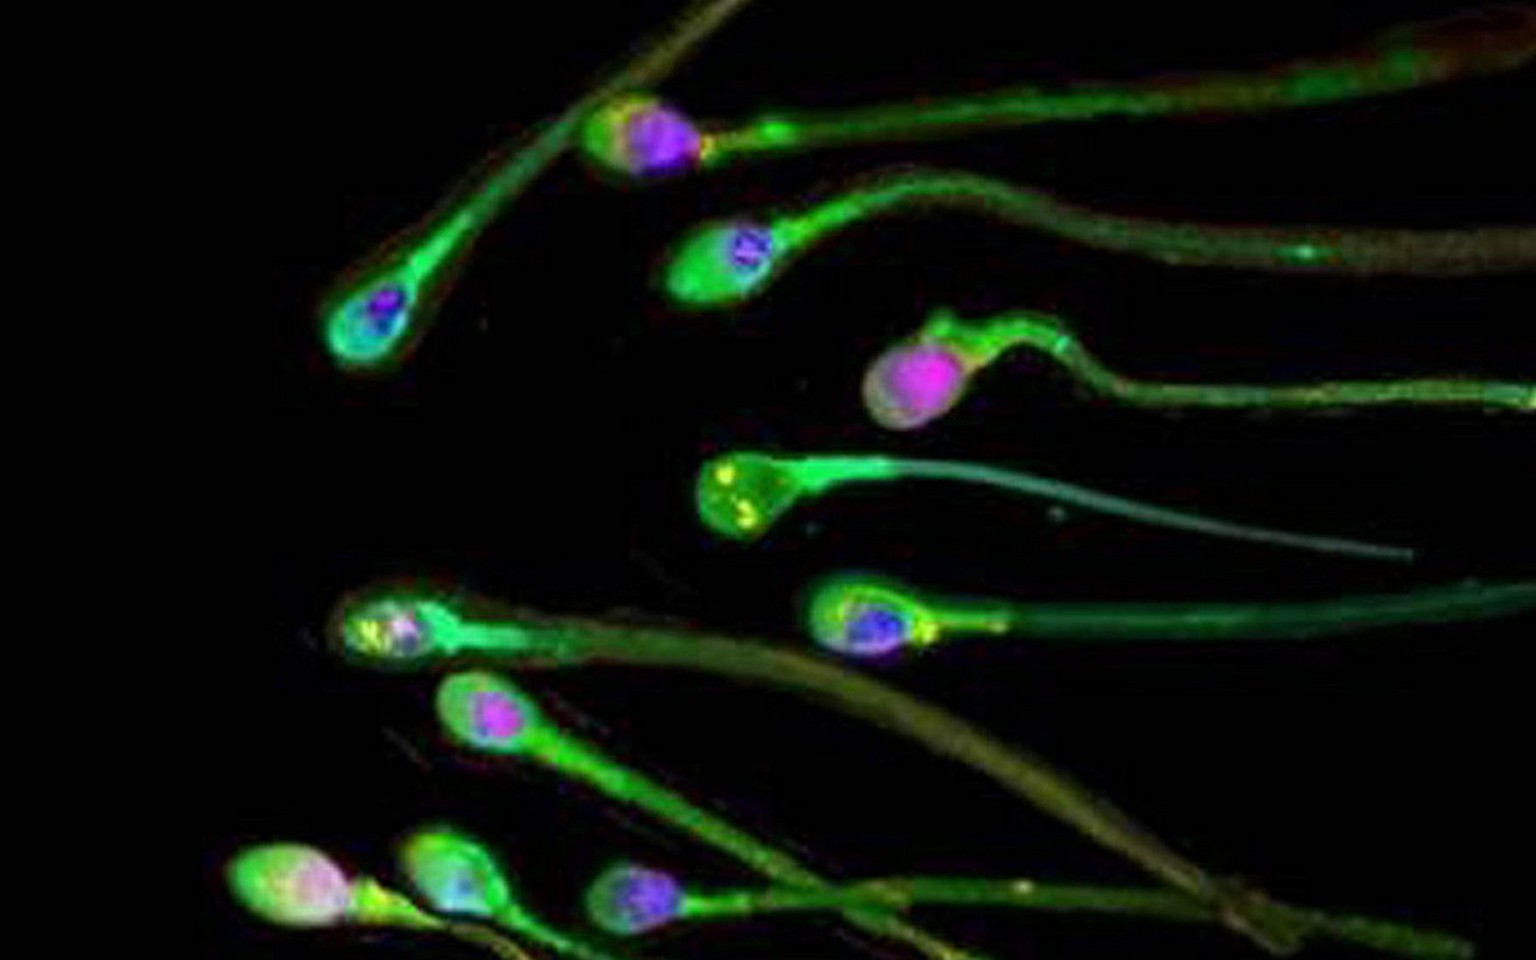 Menschliche Spermien unter dem Mikroskop.